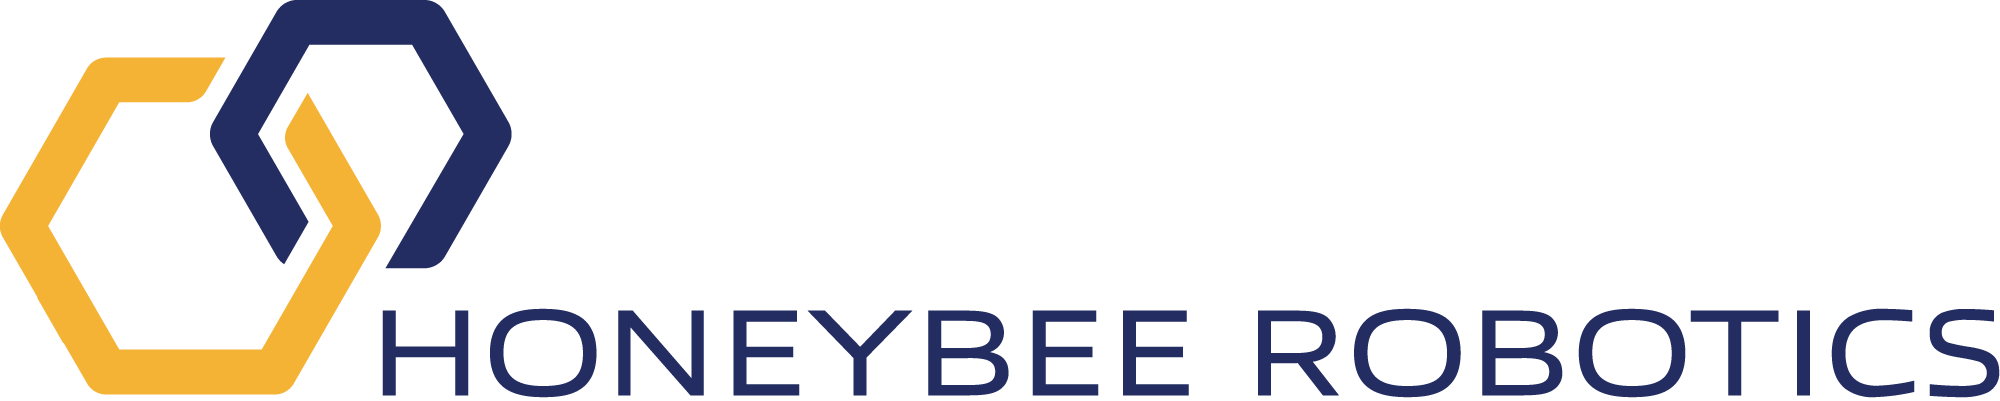 Honeybee Robotics logo